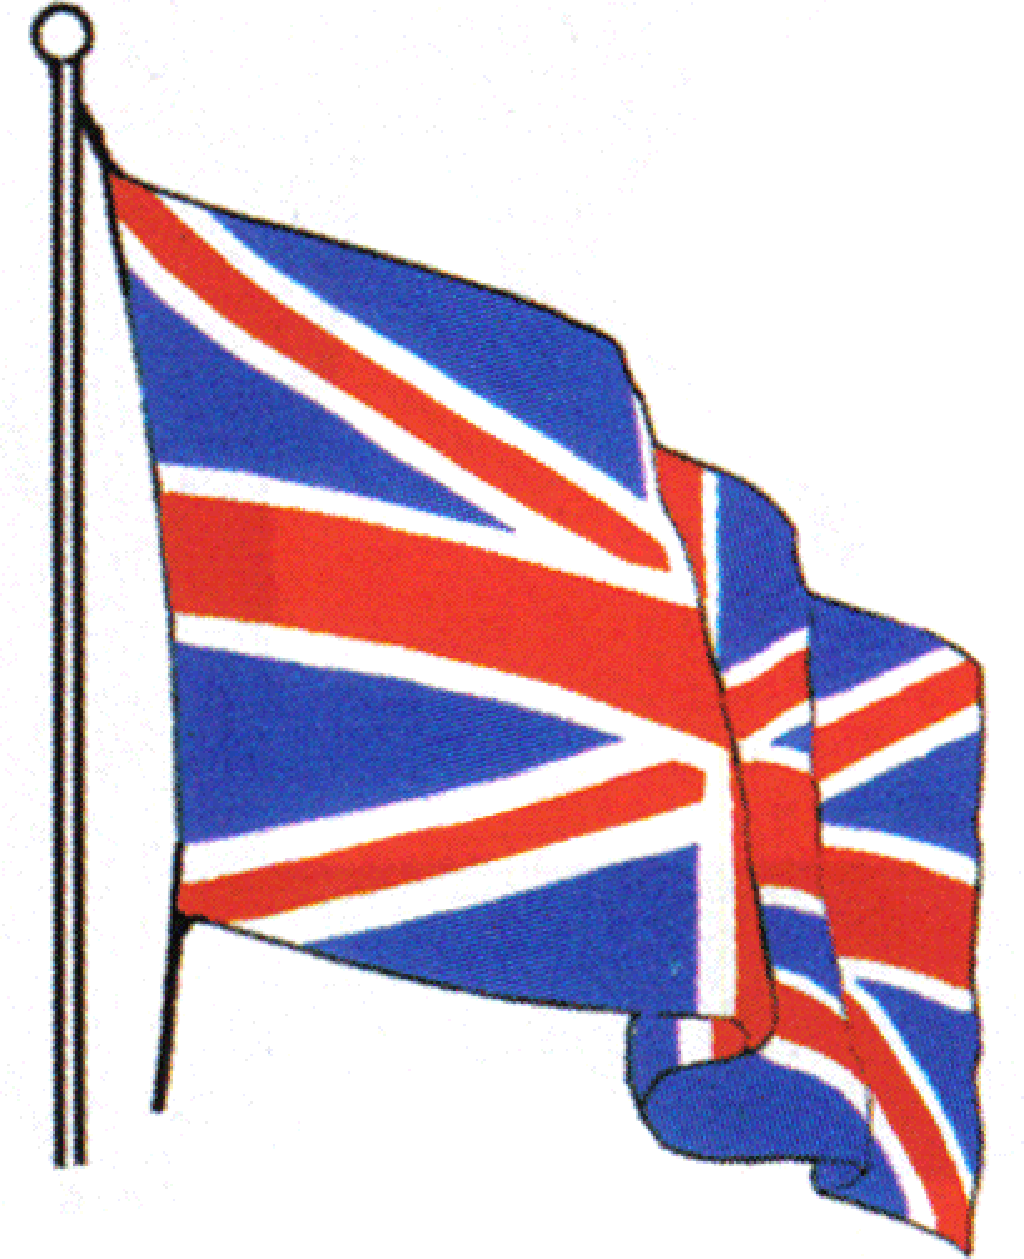 Great Britain Flag Great Britain Flag Map Great Britain Flag Icon ...